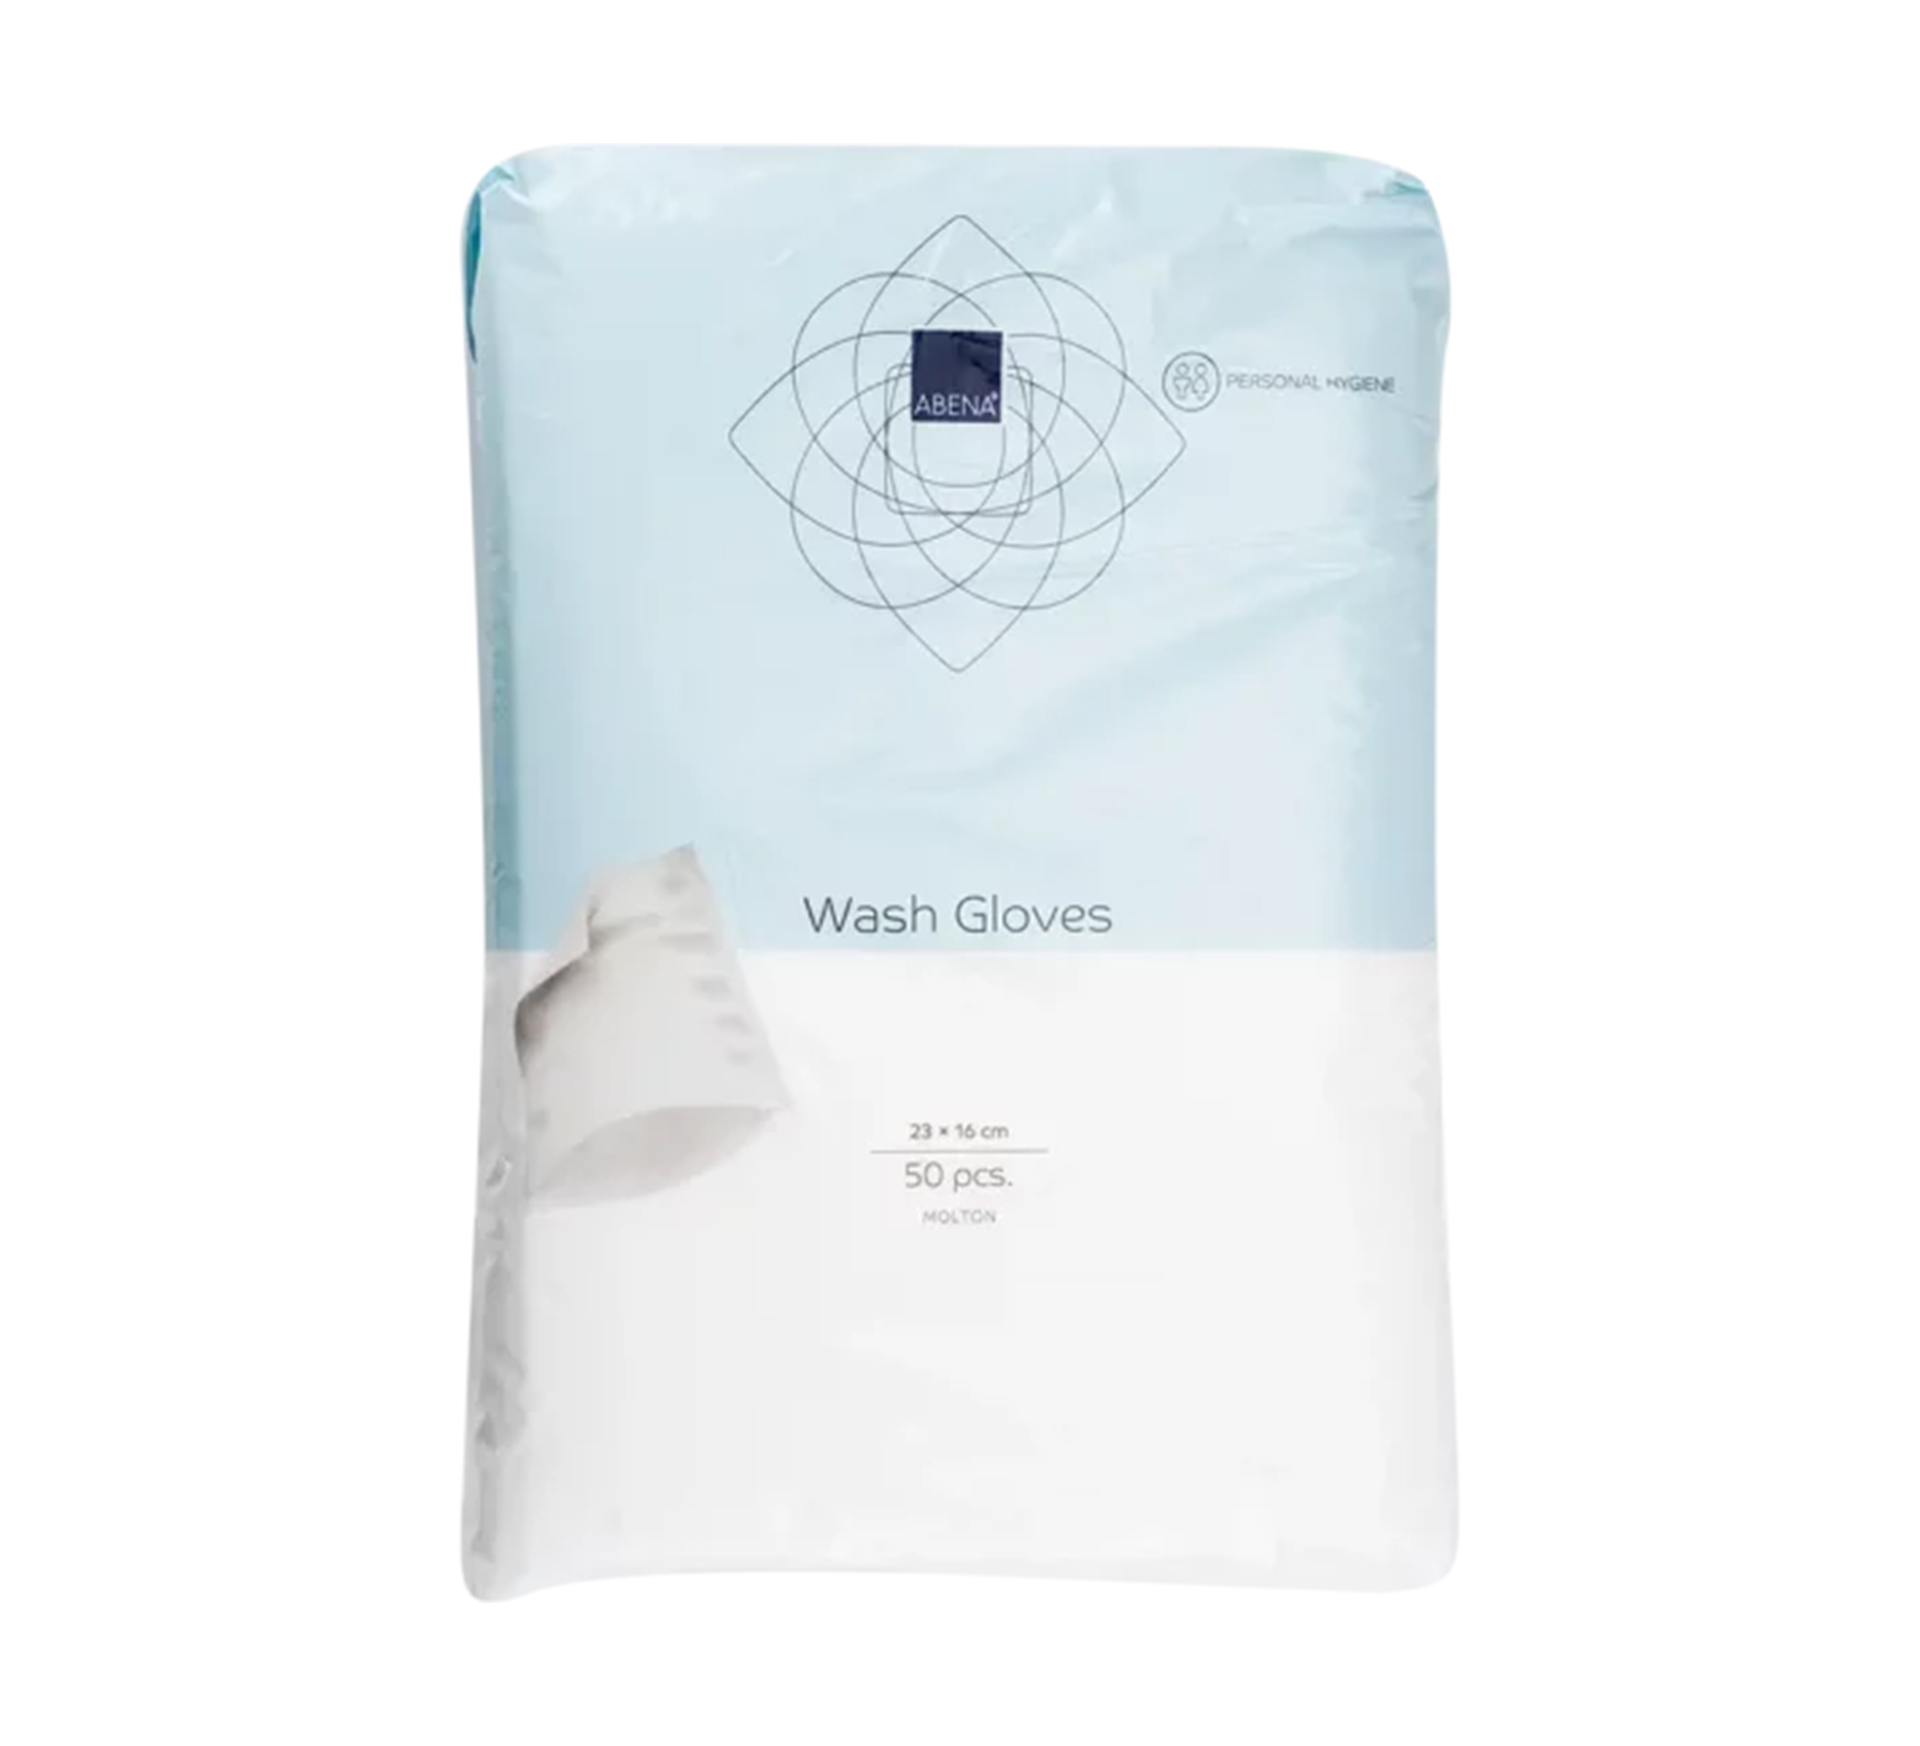 ABENA Wash Gloves, Einweg-Waschhandschuhe mit Ultraschallversiegelung, 16x23 cm, 50 Stk.